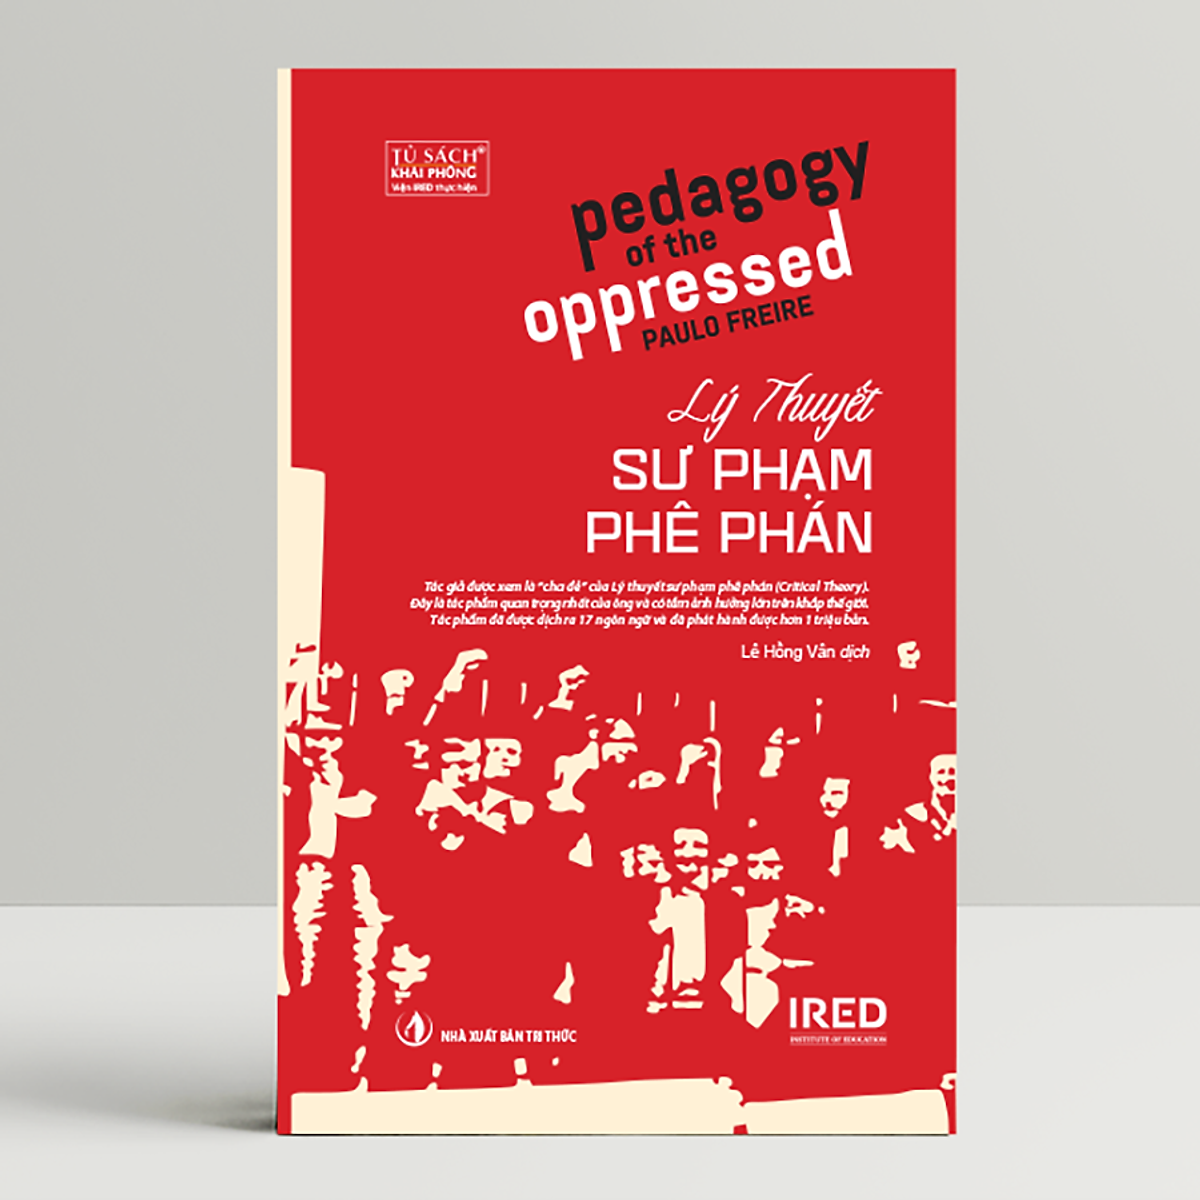 Lý Thuyết Sư Phạm Phê Phán (Pedagogy of the Oppressed)